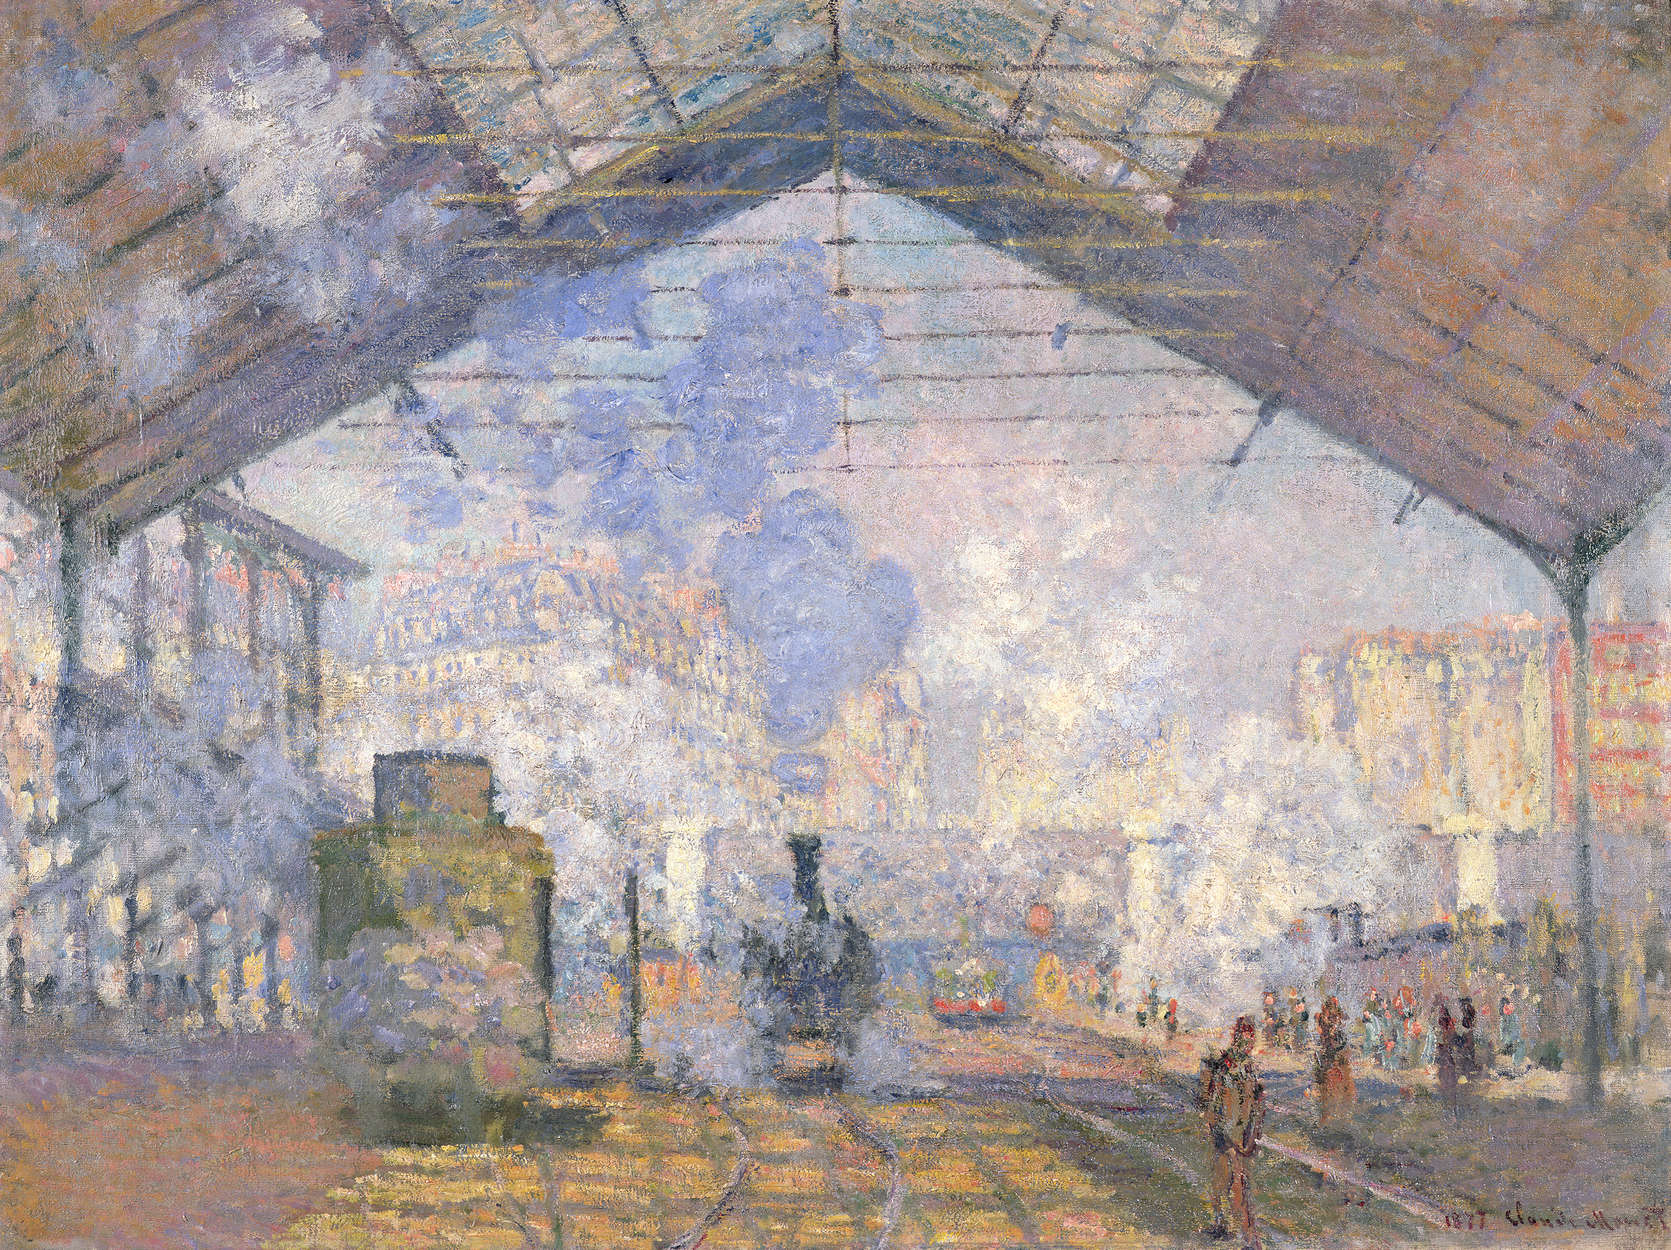             Fotomurali "Gare St. Lazare" di Claude Monet
        